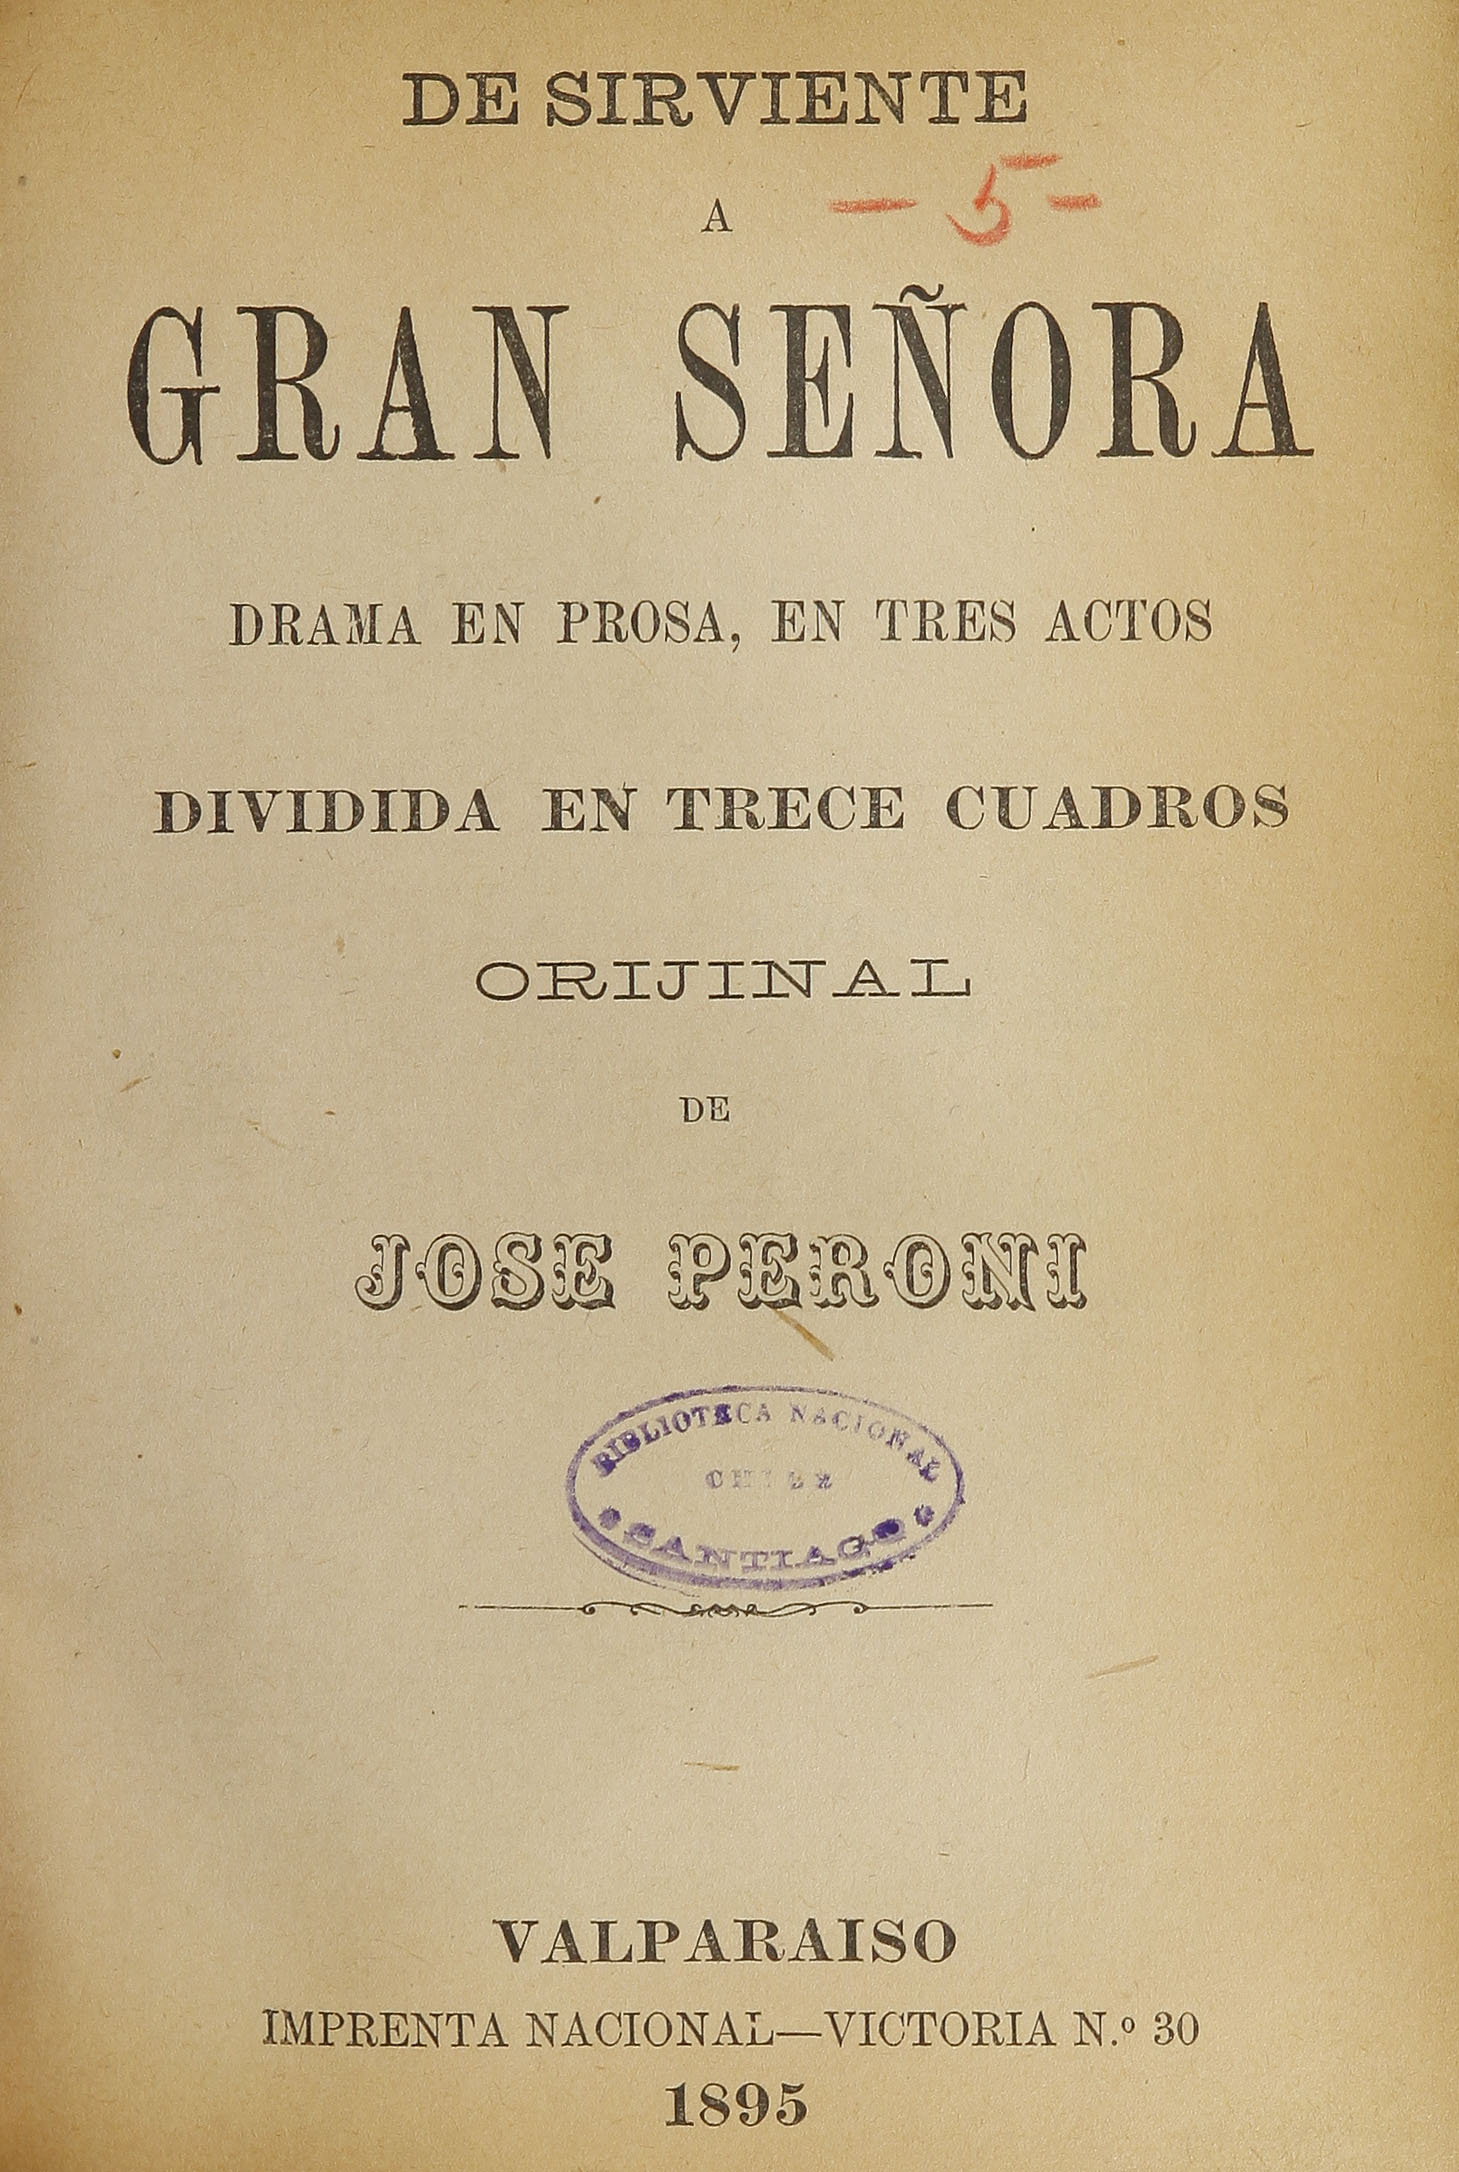 De sirviente a gran señora, Valparaíso, Imprenta Nacional, 1895